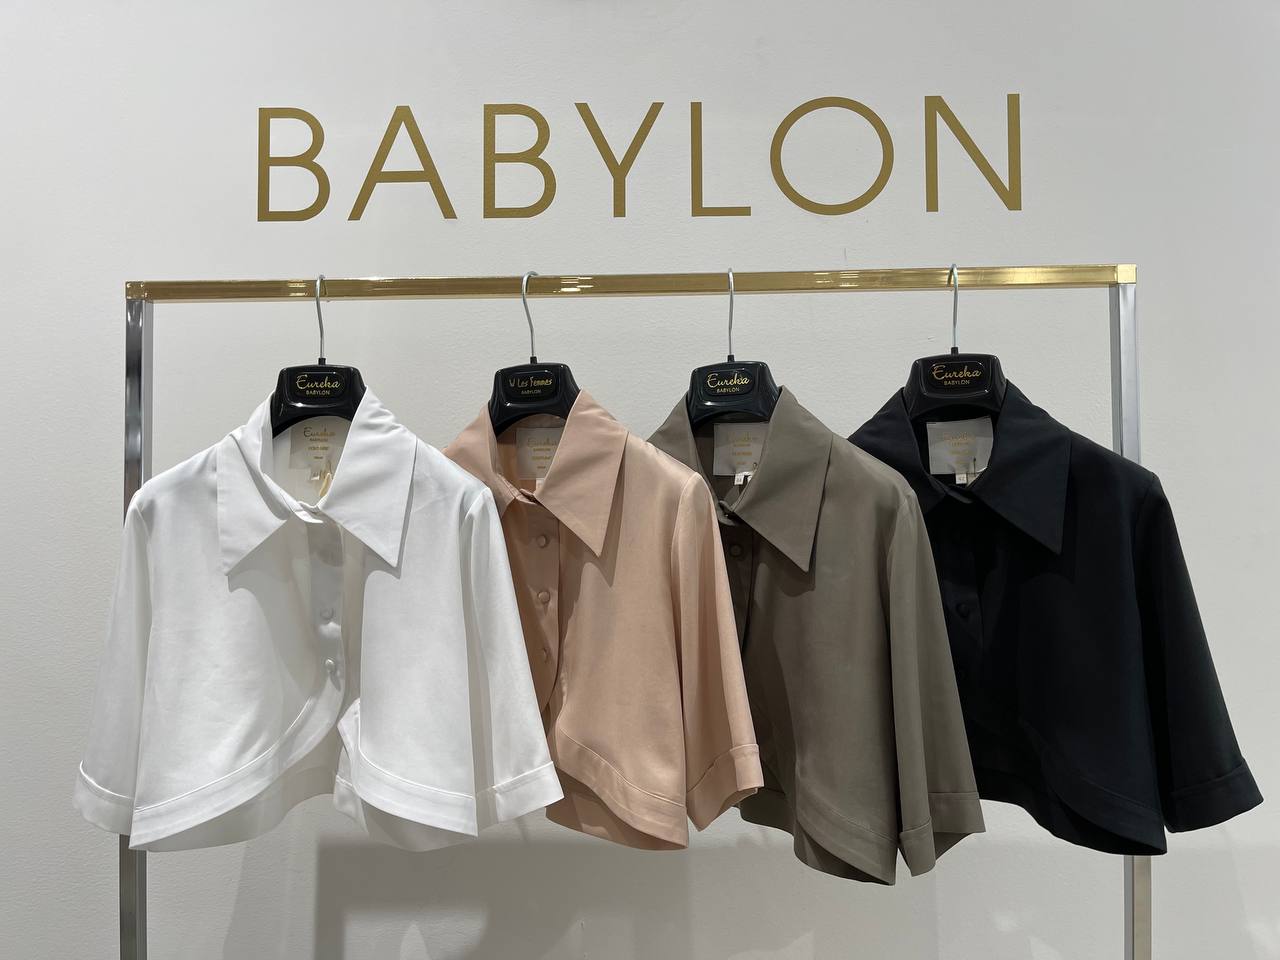 Итальянская одежда, бренд Babylon, арт. 73262199